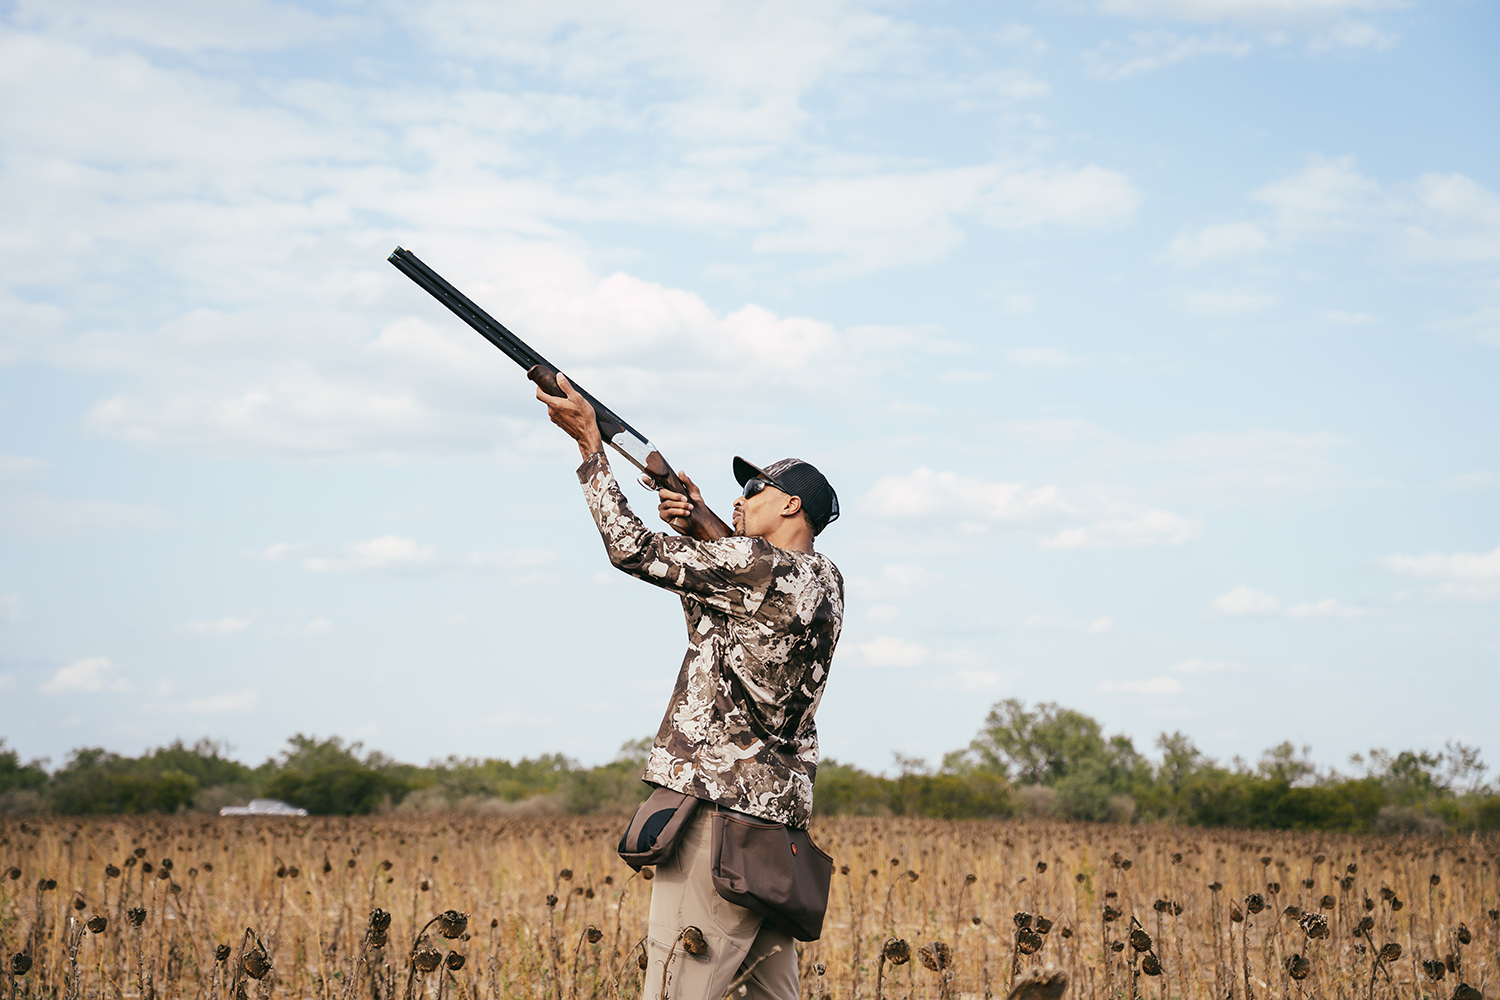 A male hunter aims a shotgun in the air.